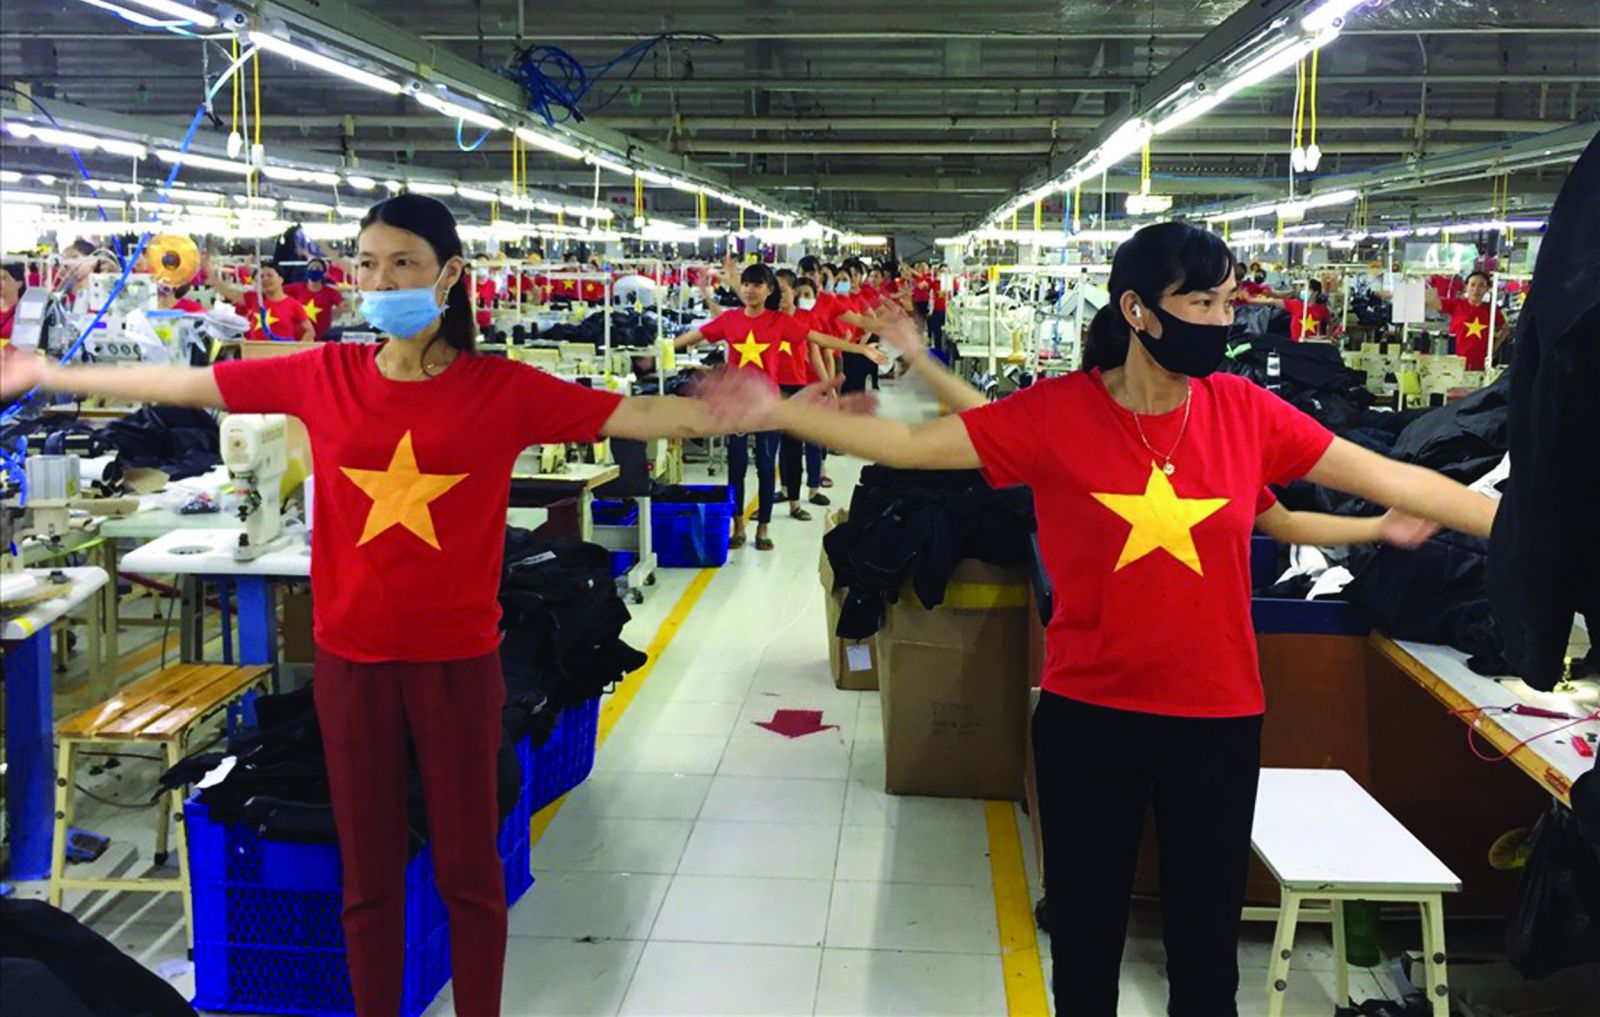 Hưởng ứng phong trào “Khỏe để lao động sản xuất” do Tổng LĐLĐ Việt Nam phát động, tập thể dục giữa giờ đã trở thành một phản xạ của mỗi cán bộ công nhân Công ty TNHH Kido Vinh, Nghệ An. Ảnh: Huy Khôi